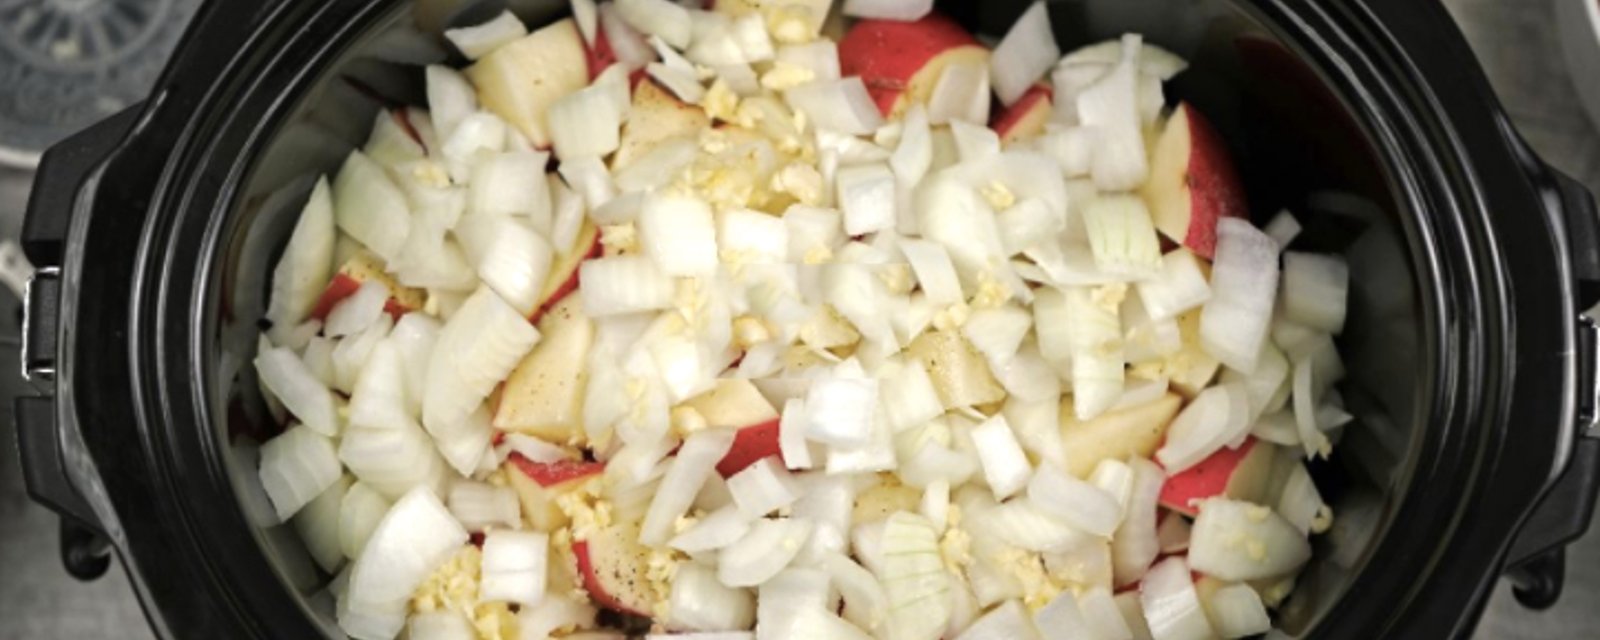 Dans votre mijoteuse, combinez des oignons, des patates et du boeuf haché pour un repas prêt à votre retour du boulot